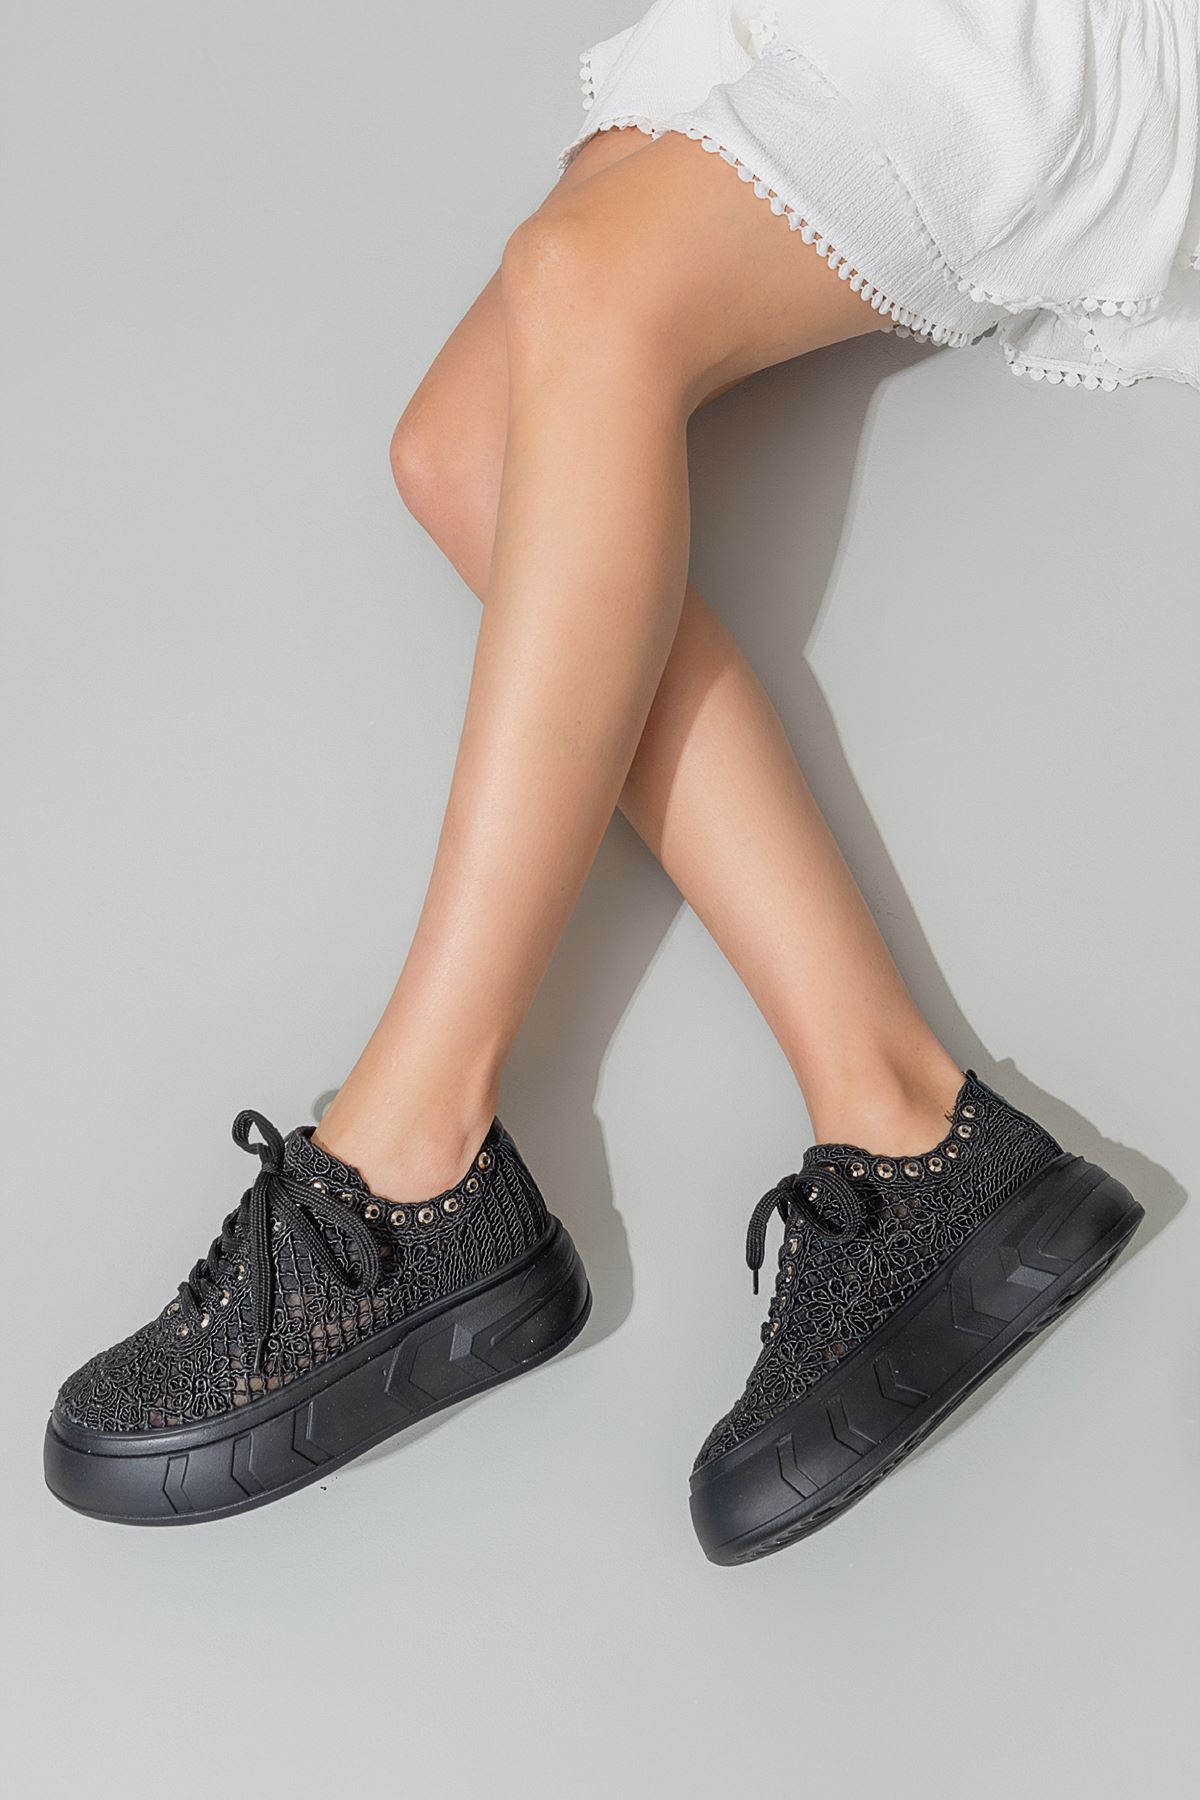 Evoli Kadın Spor Ayakkabı Siyah Örgü